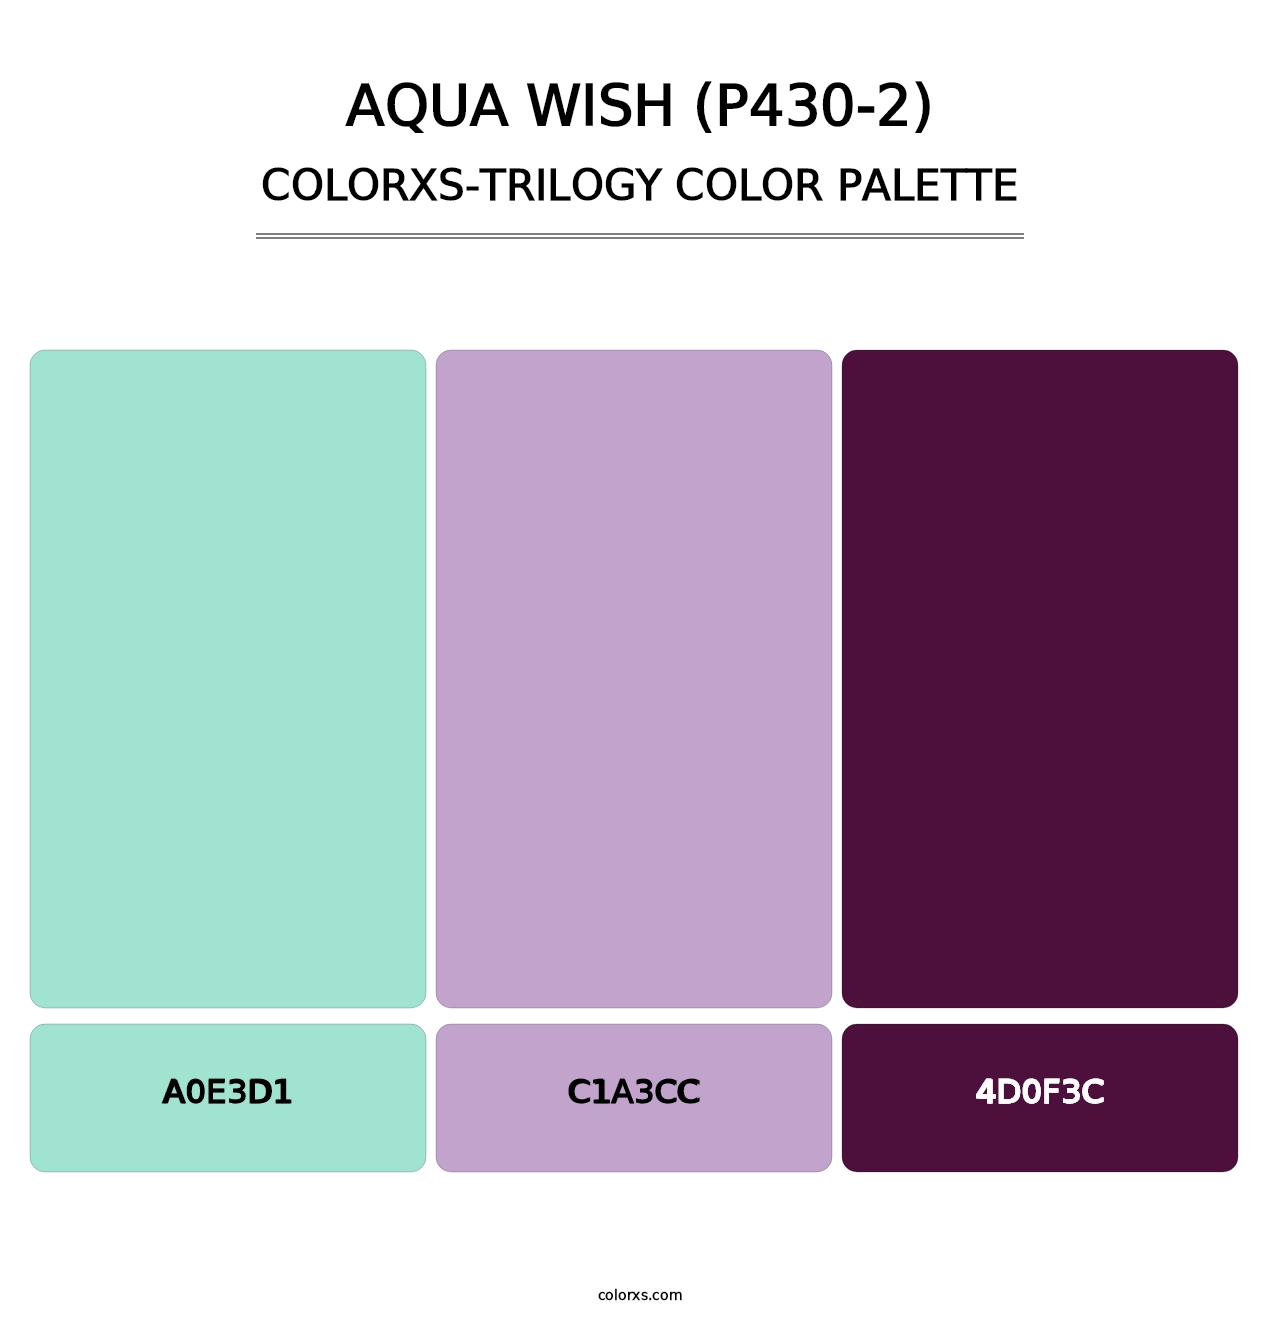 Aqua Wish (P430-2) - Colorxs Trilogy Palette